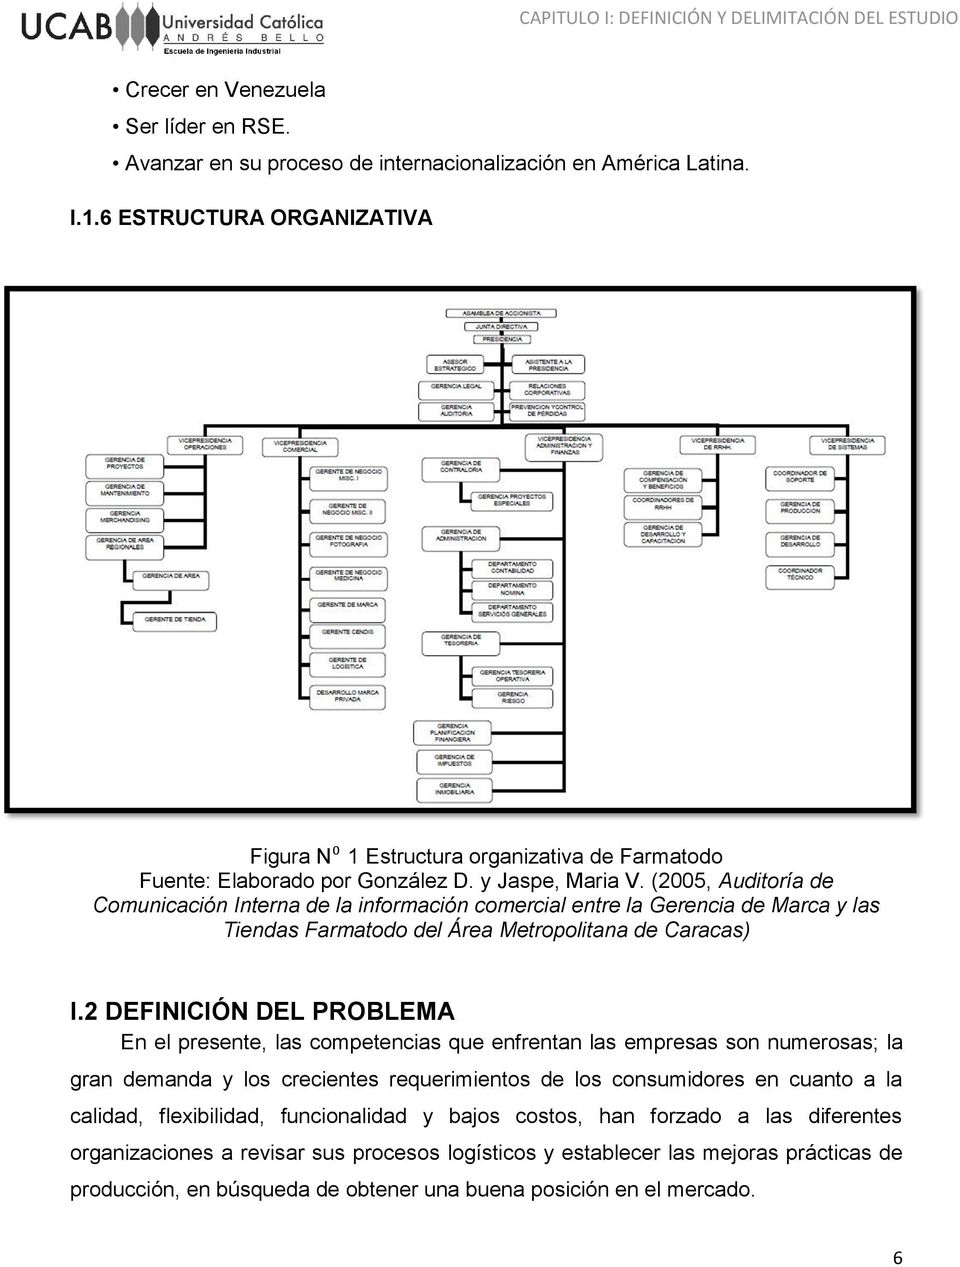 (2005, Auditoría de Comunicación Interna de la información comercial entre la Gerencia de Marca y las Tiendas Farmatodo del Área Metropolitana de Caracas) I.